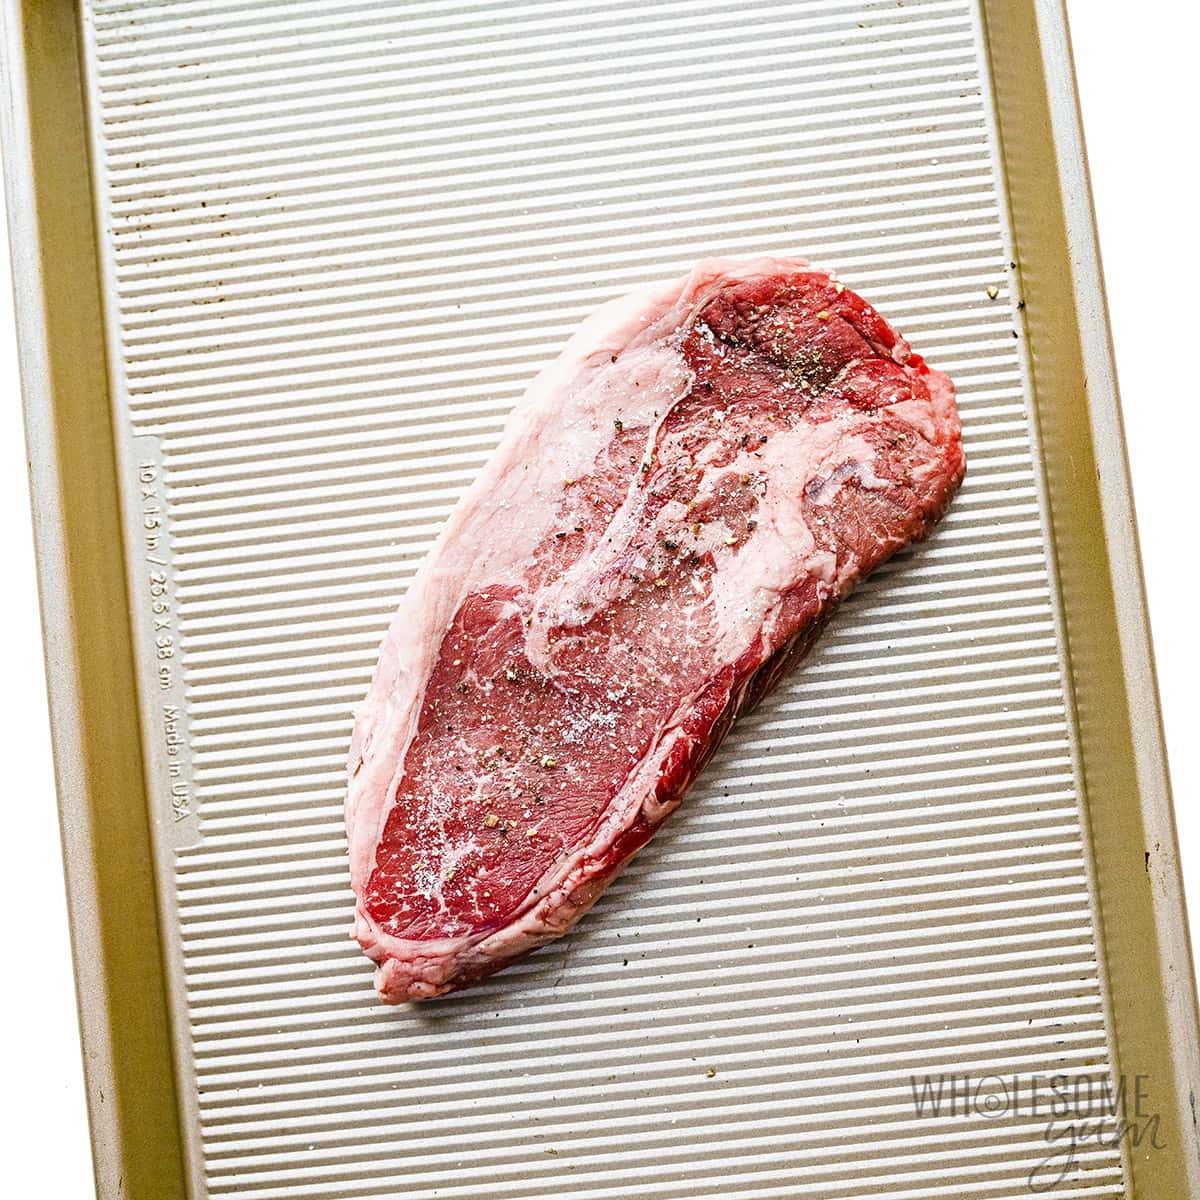 Seasoned steak on a sheet pan. 